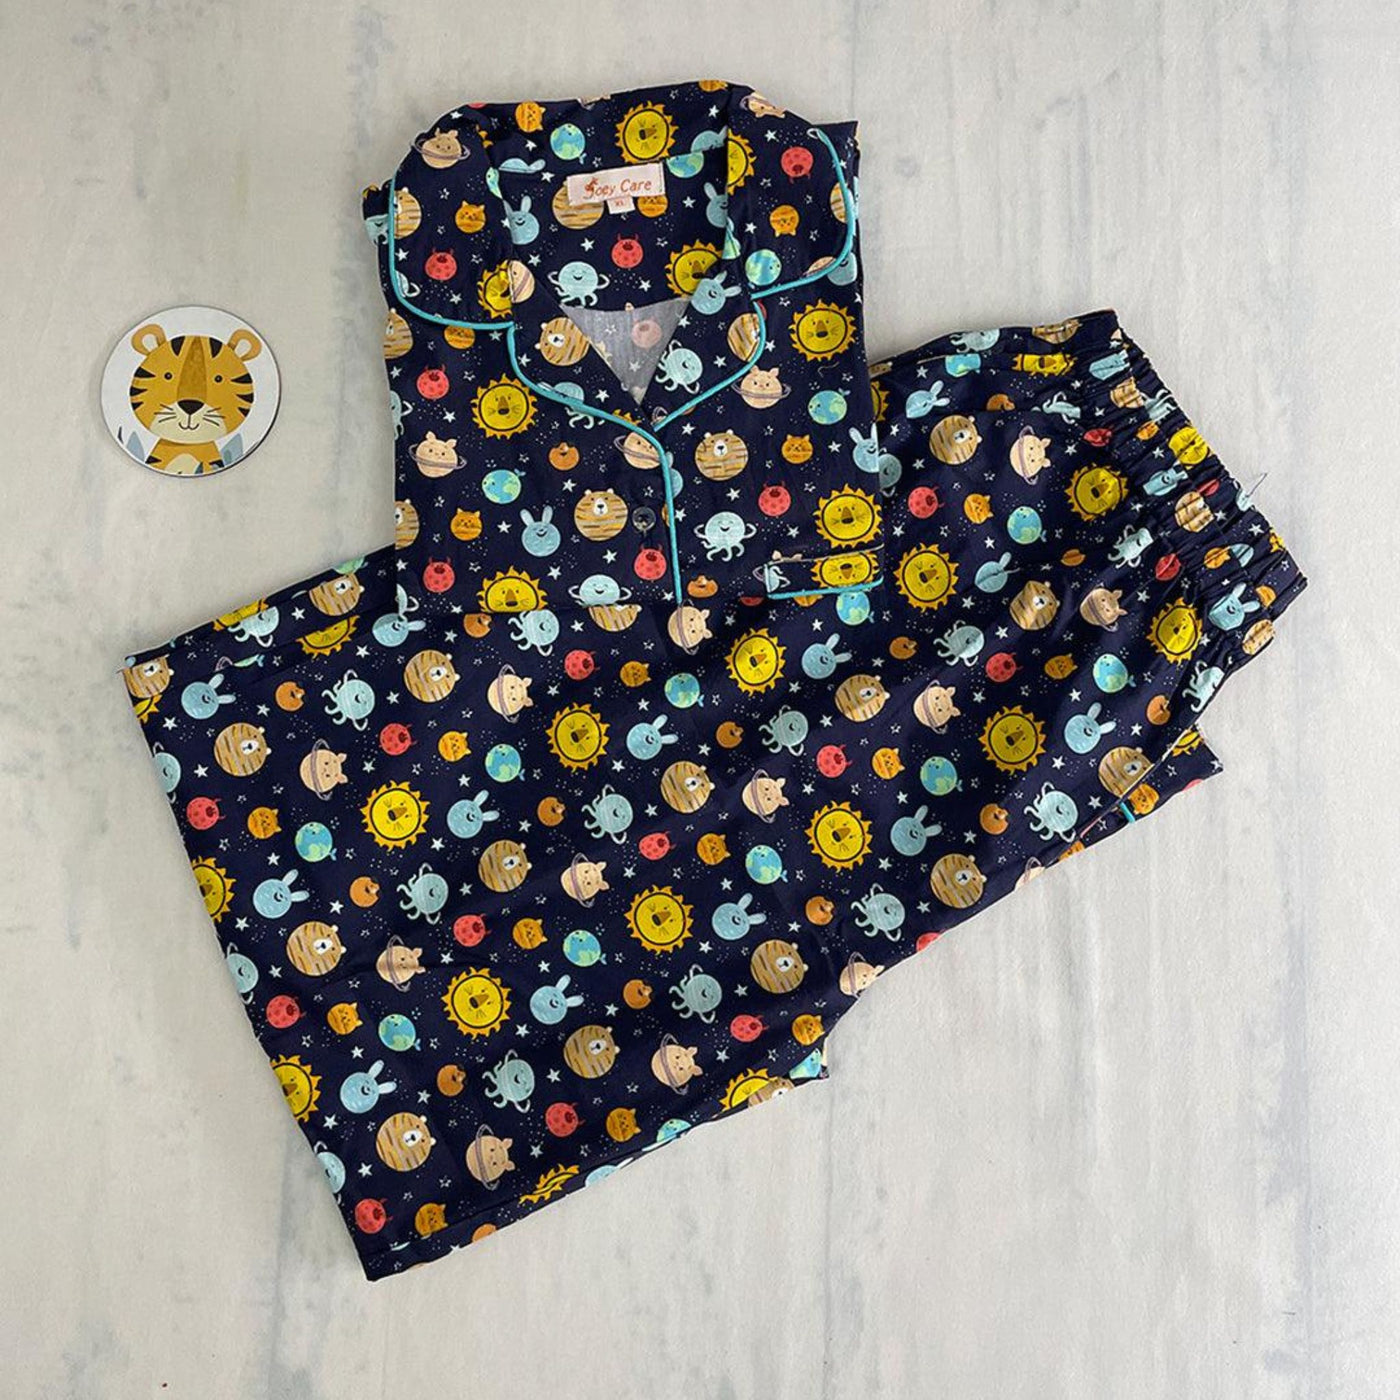 Pocket Nightwear for Girls and Boys - Solar system Joeycare